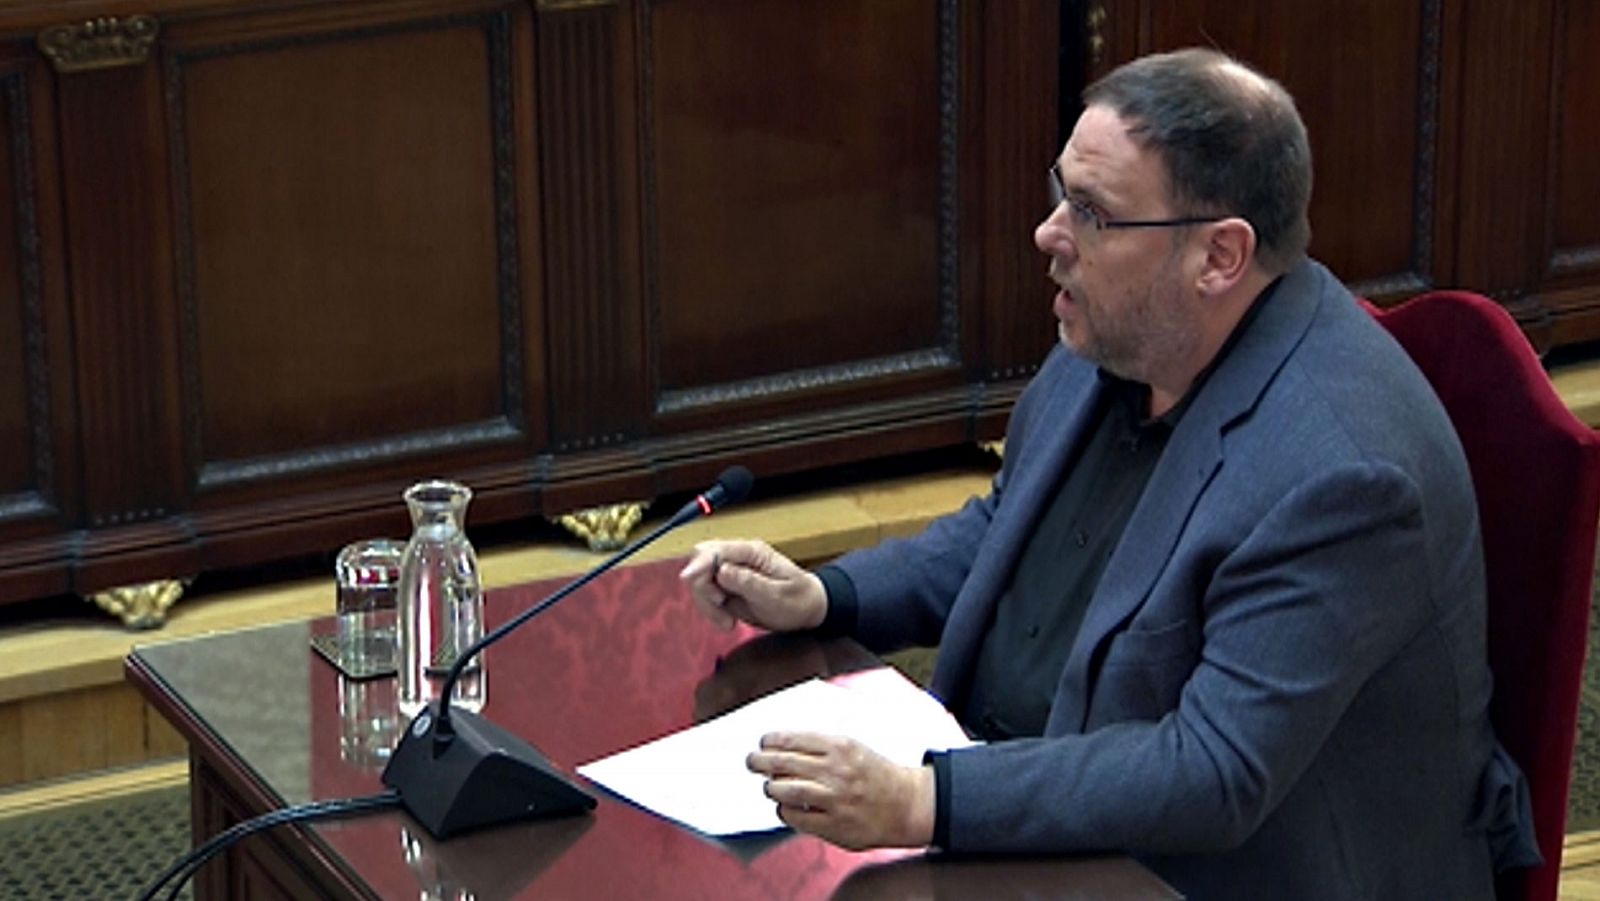 Juicio procés - Junqueras piede devolver la cuestión de Cataluña "al terreno de la política" - RTVE.es